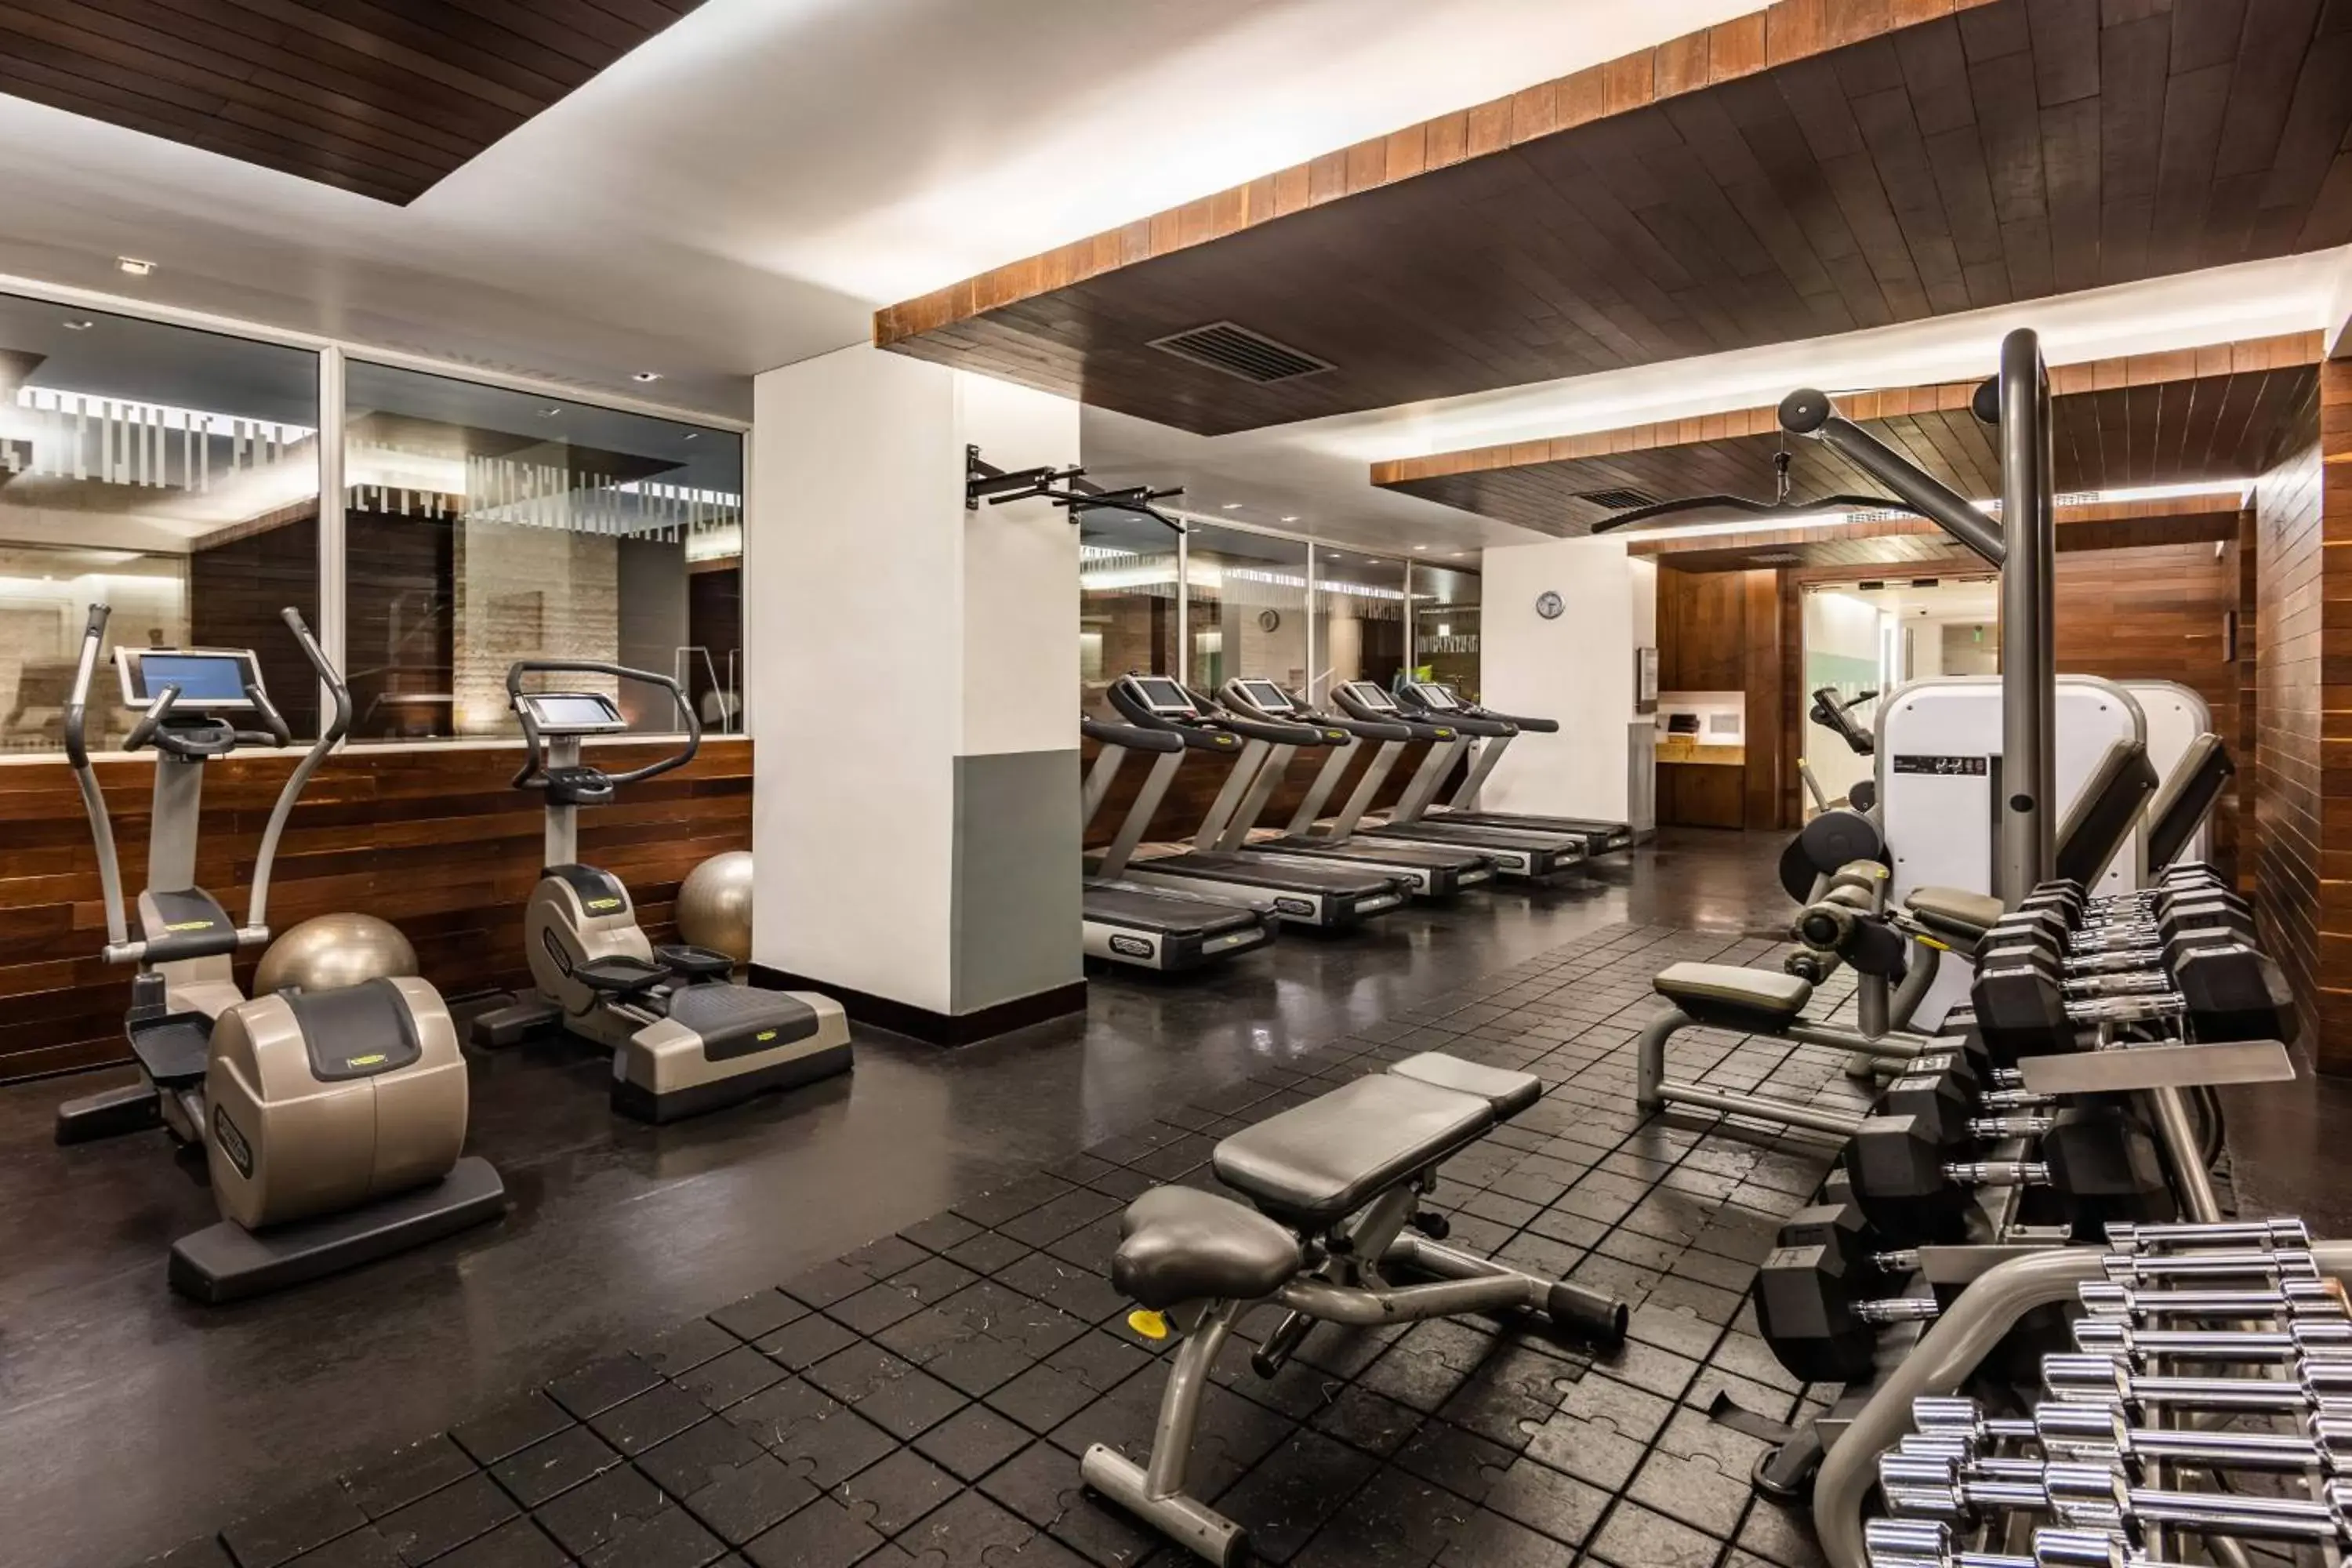 Fitness centre/facilities, Fitness Center/Facilities in Bogotá Marriott Hotel